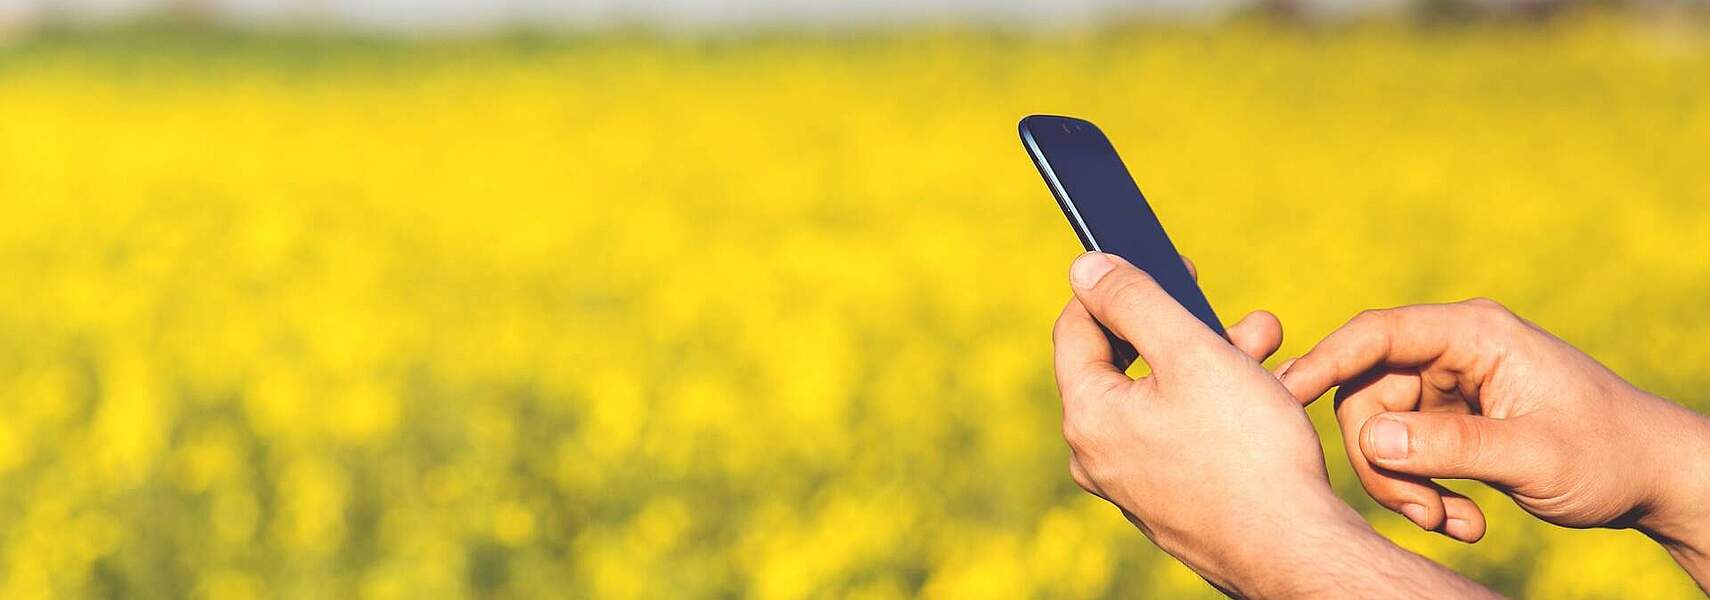 Schon 8 von 10 Landwirten setzen auf digitale Technologien